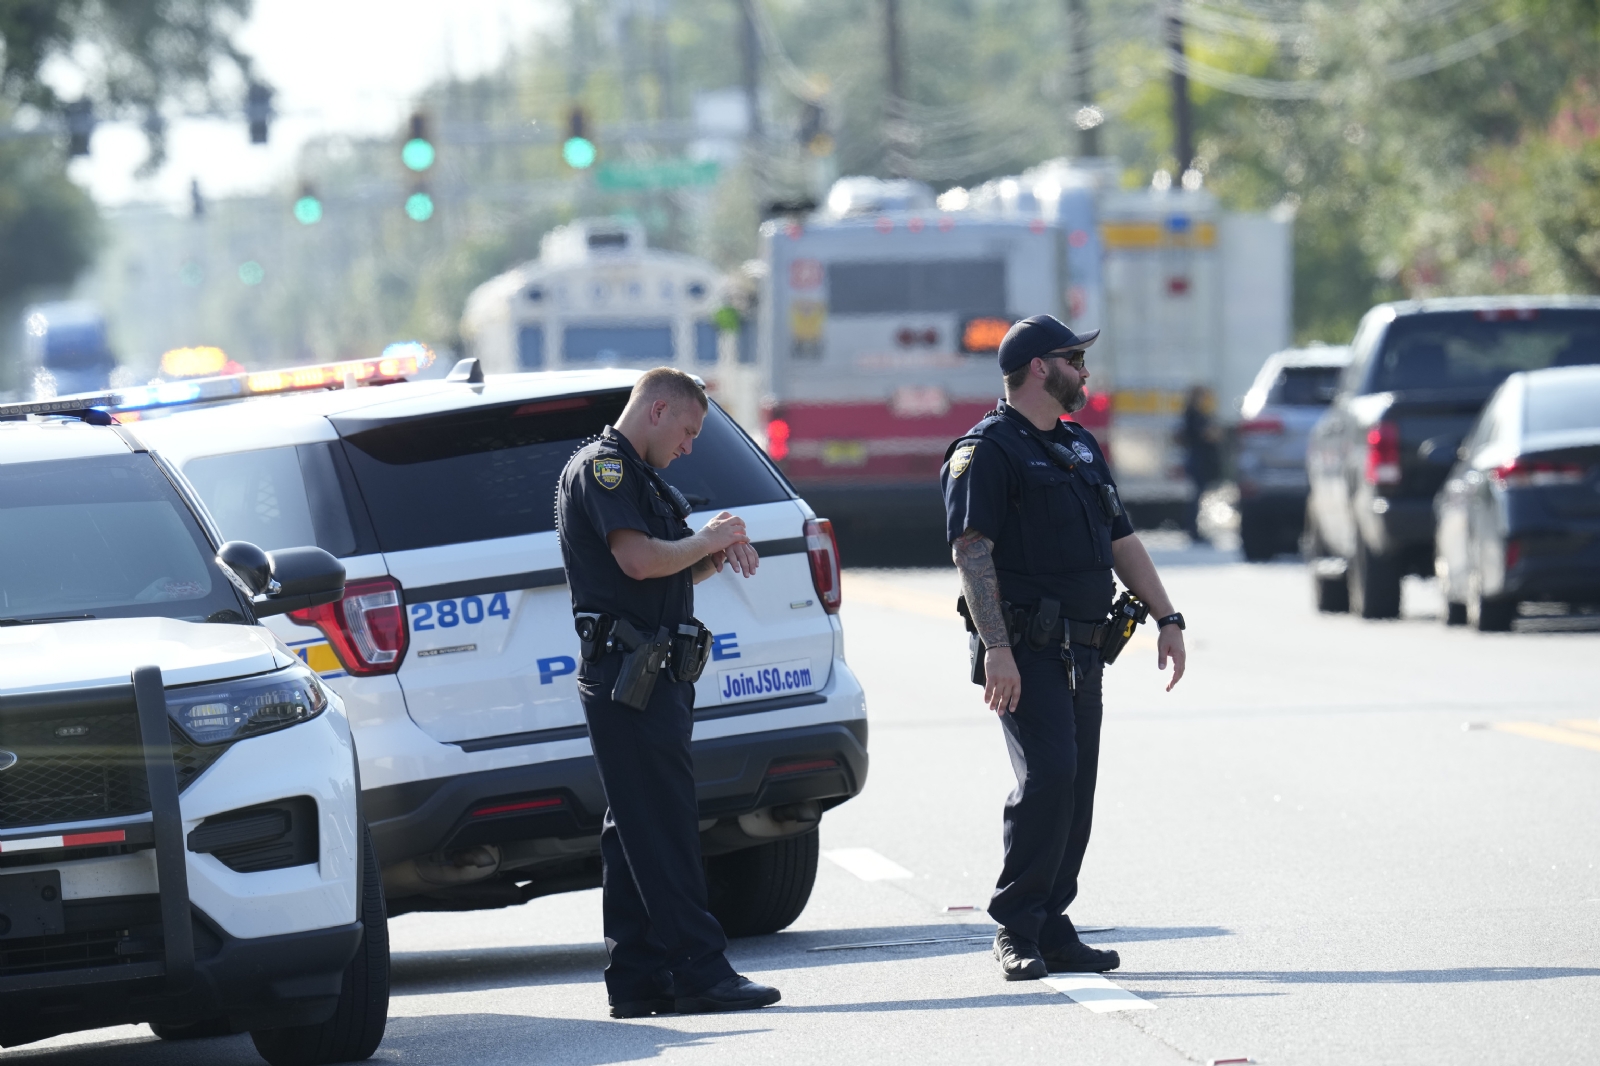 Autoridades de Estados Unidos reportan tiroteo en Florida con varios heridos